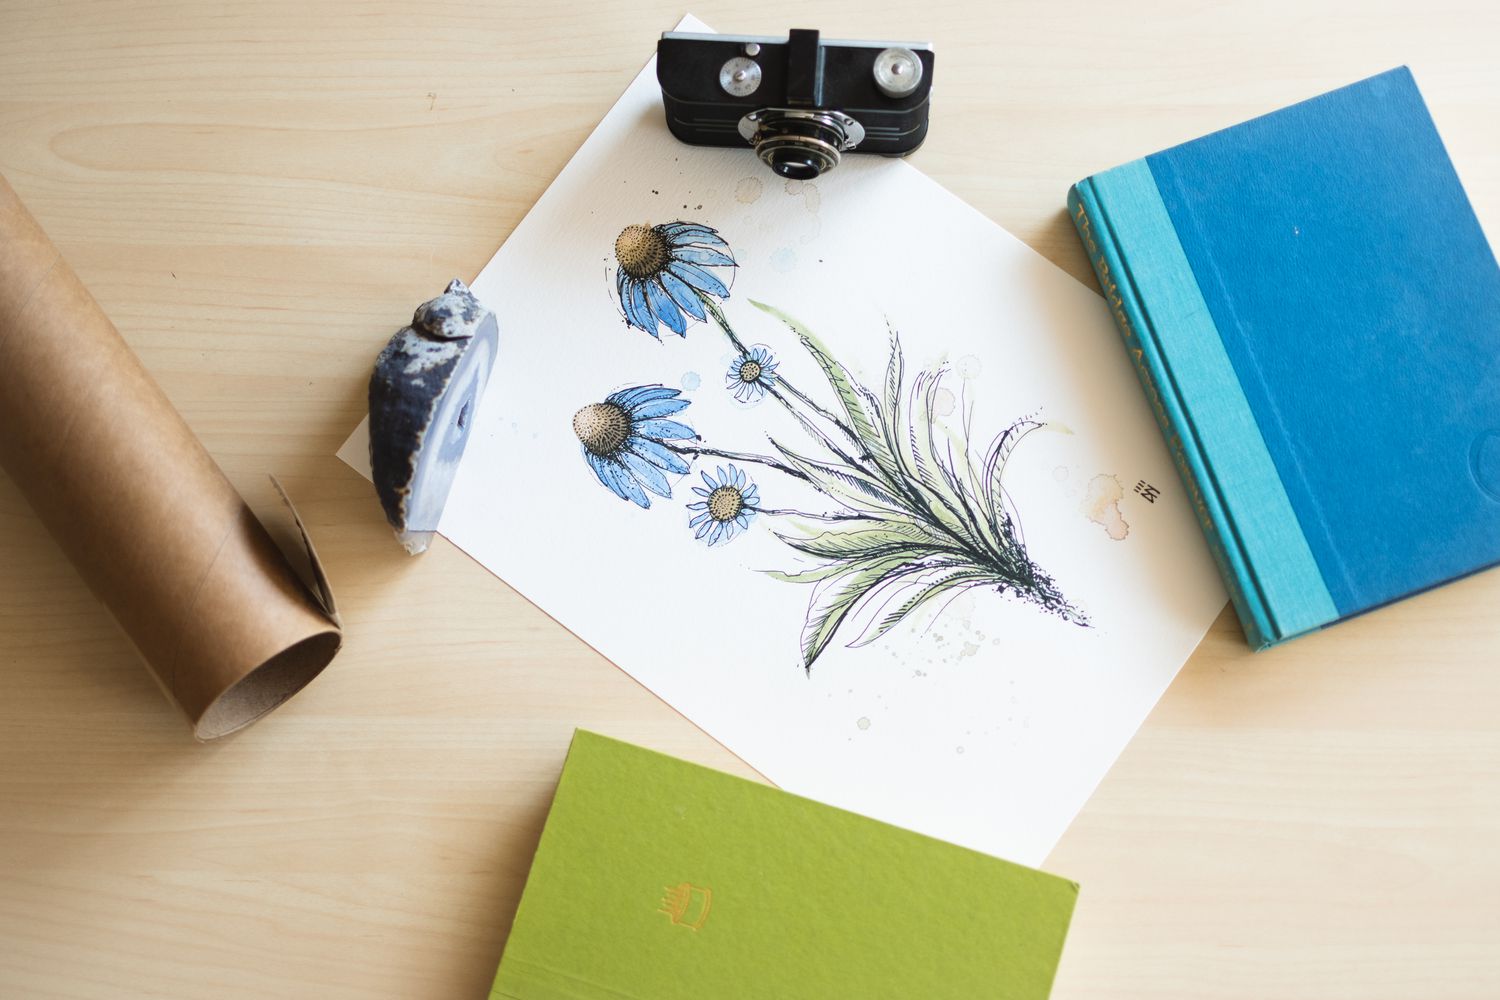 Plakat mit blauen Blumen auf einer Fläche mit Kamera, Büchern und Felsen zum Abflachen ausgelegt 